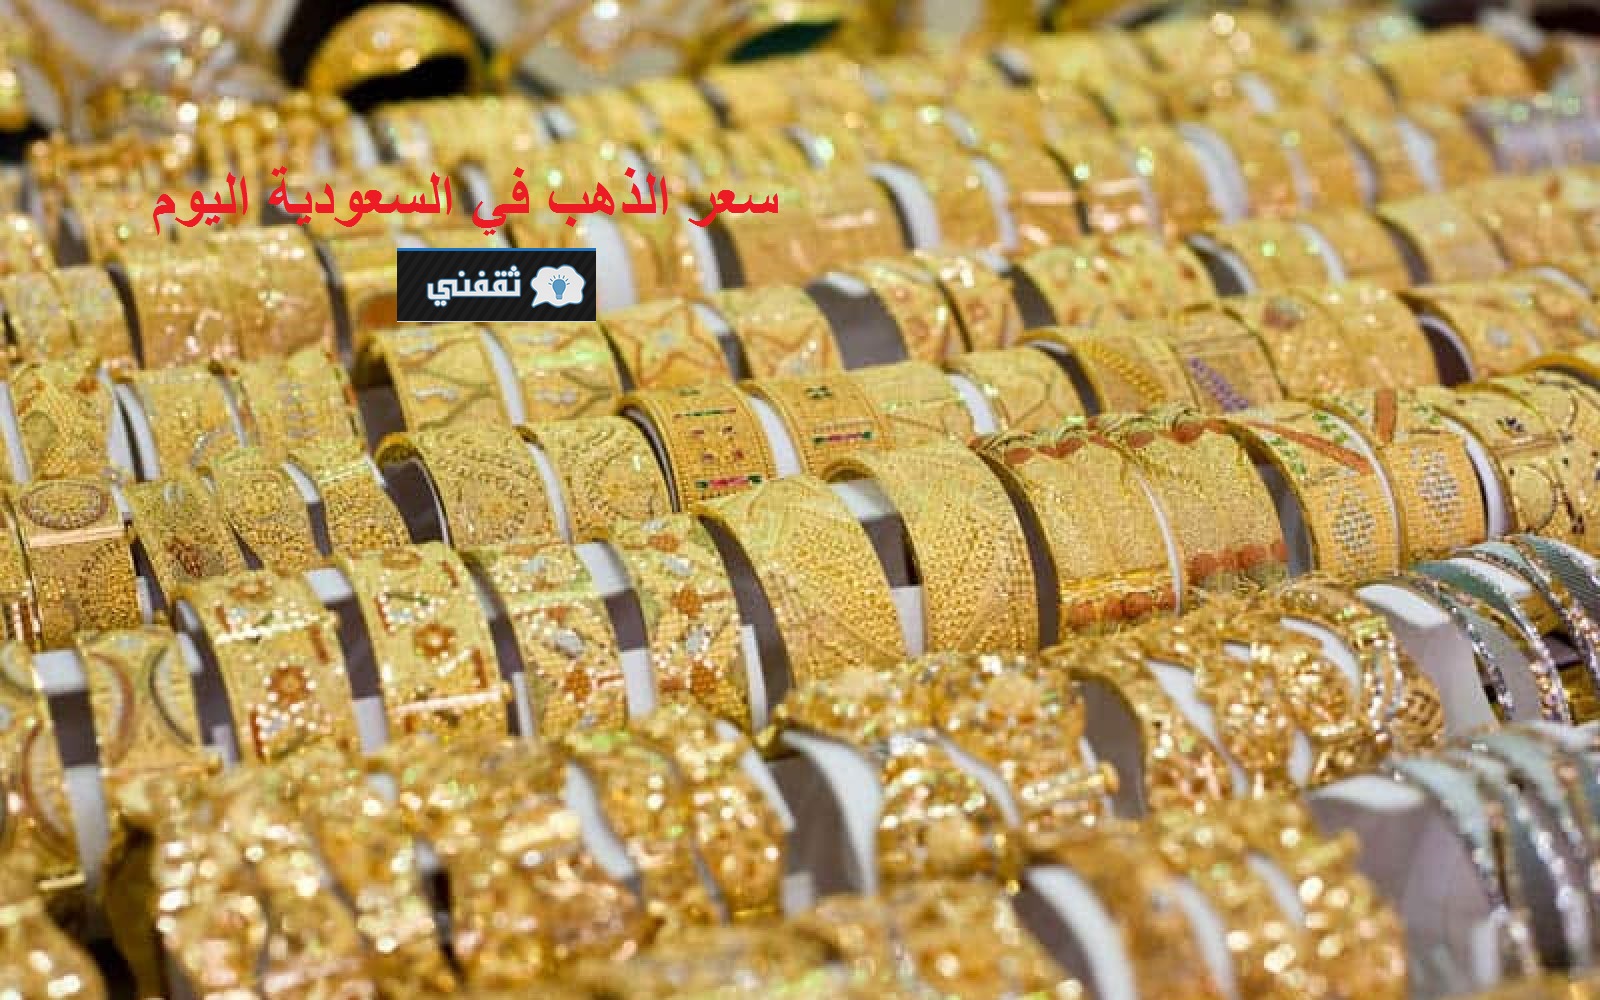 سعر الذهب في السعودية اليوم 2021/02/19 || تراجع المعدن الأصفر عالمياً وداخل المملكة كود محدث